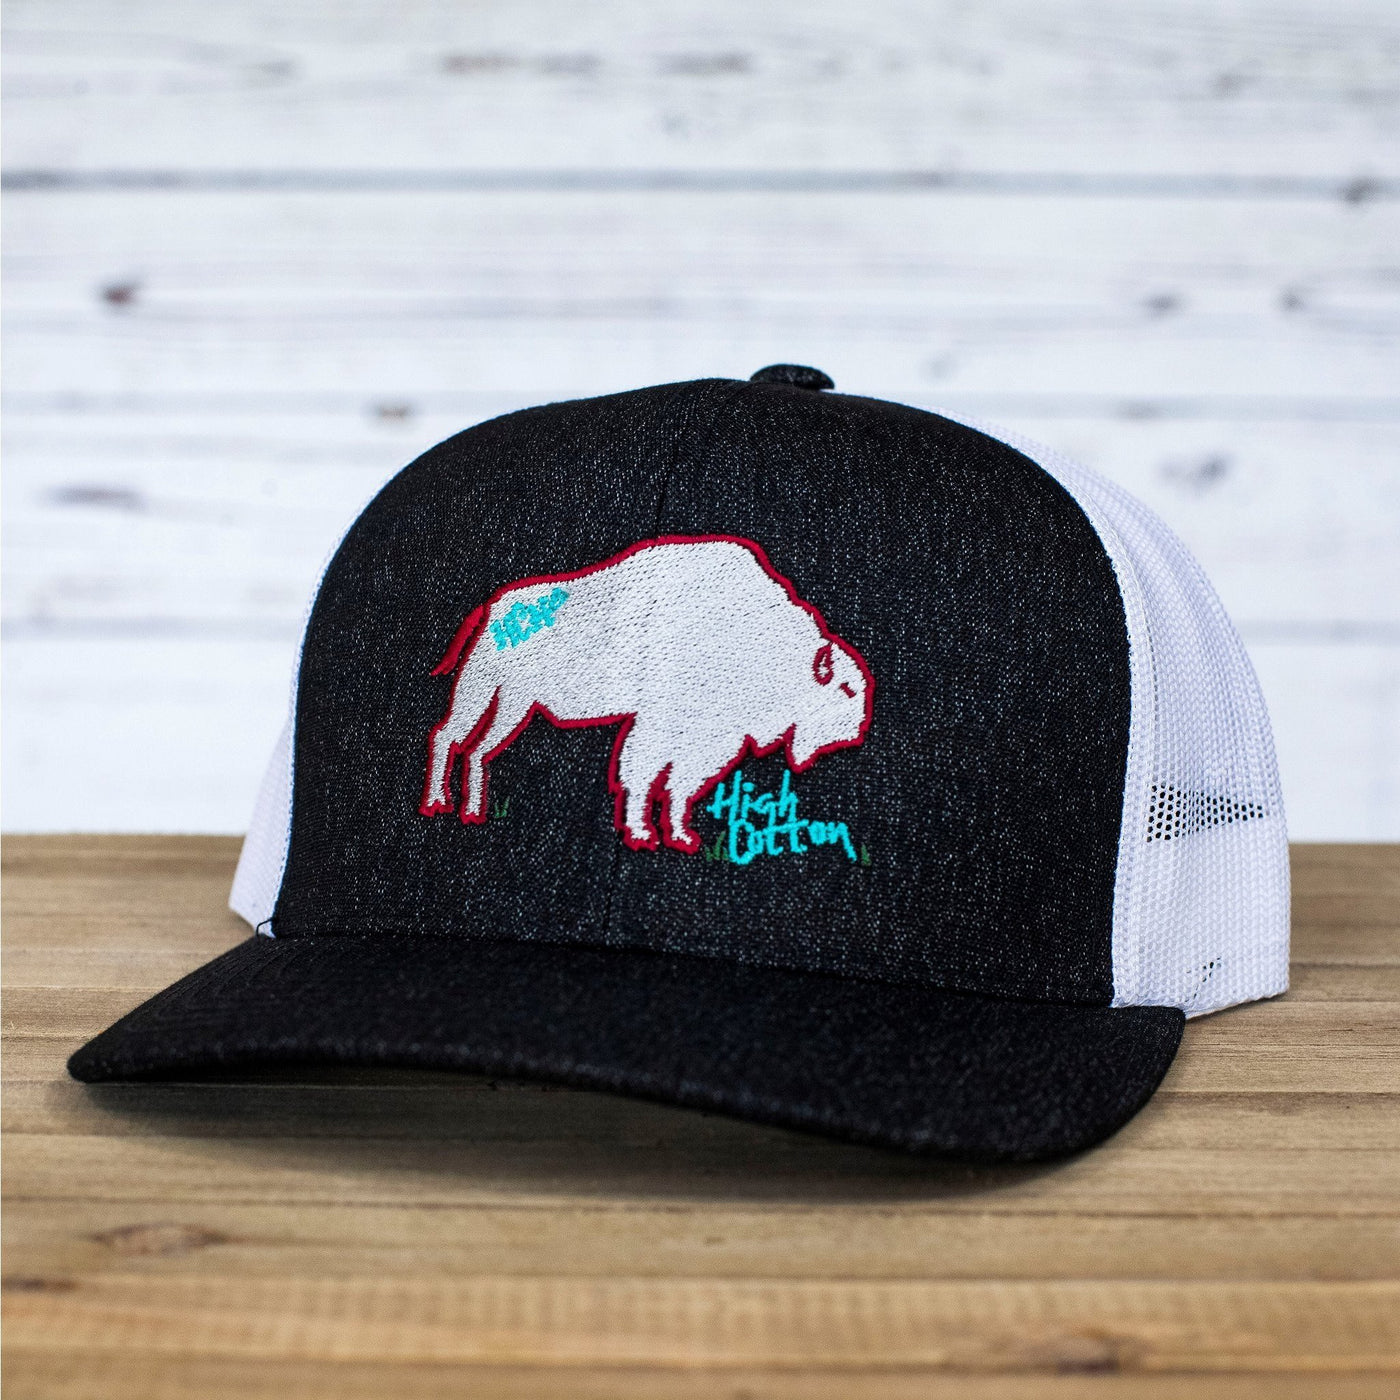 Buffalo Bill Black Trucker Hat by High Cotton Hats Co